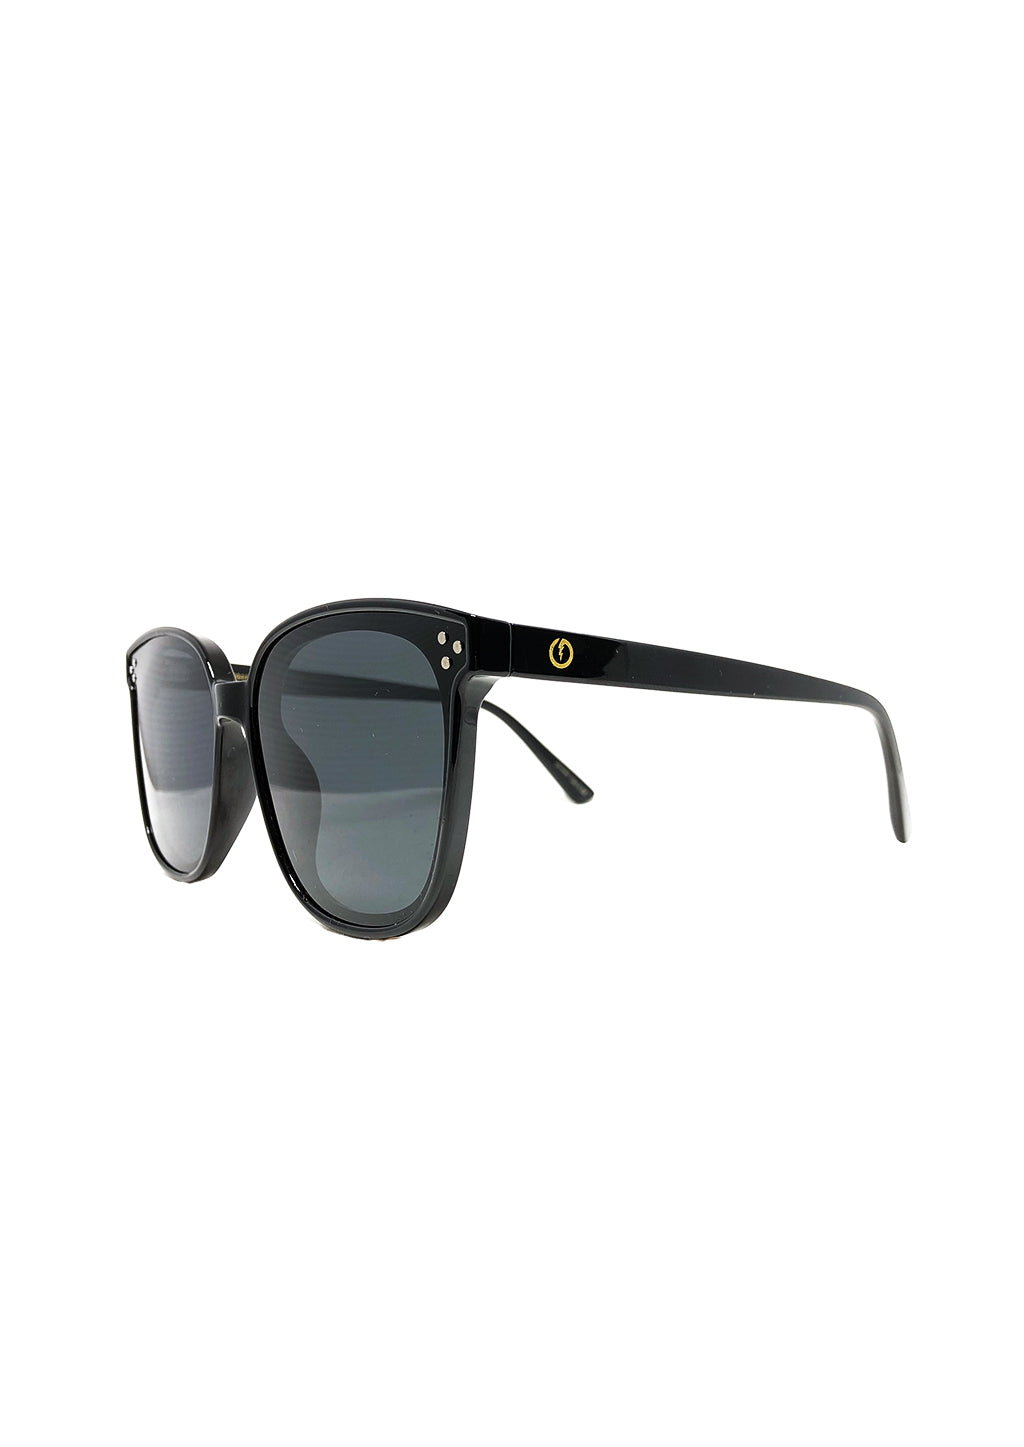 Dahlia Wayfarer sunglasses - Details